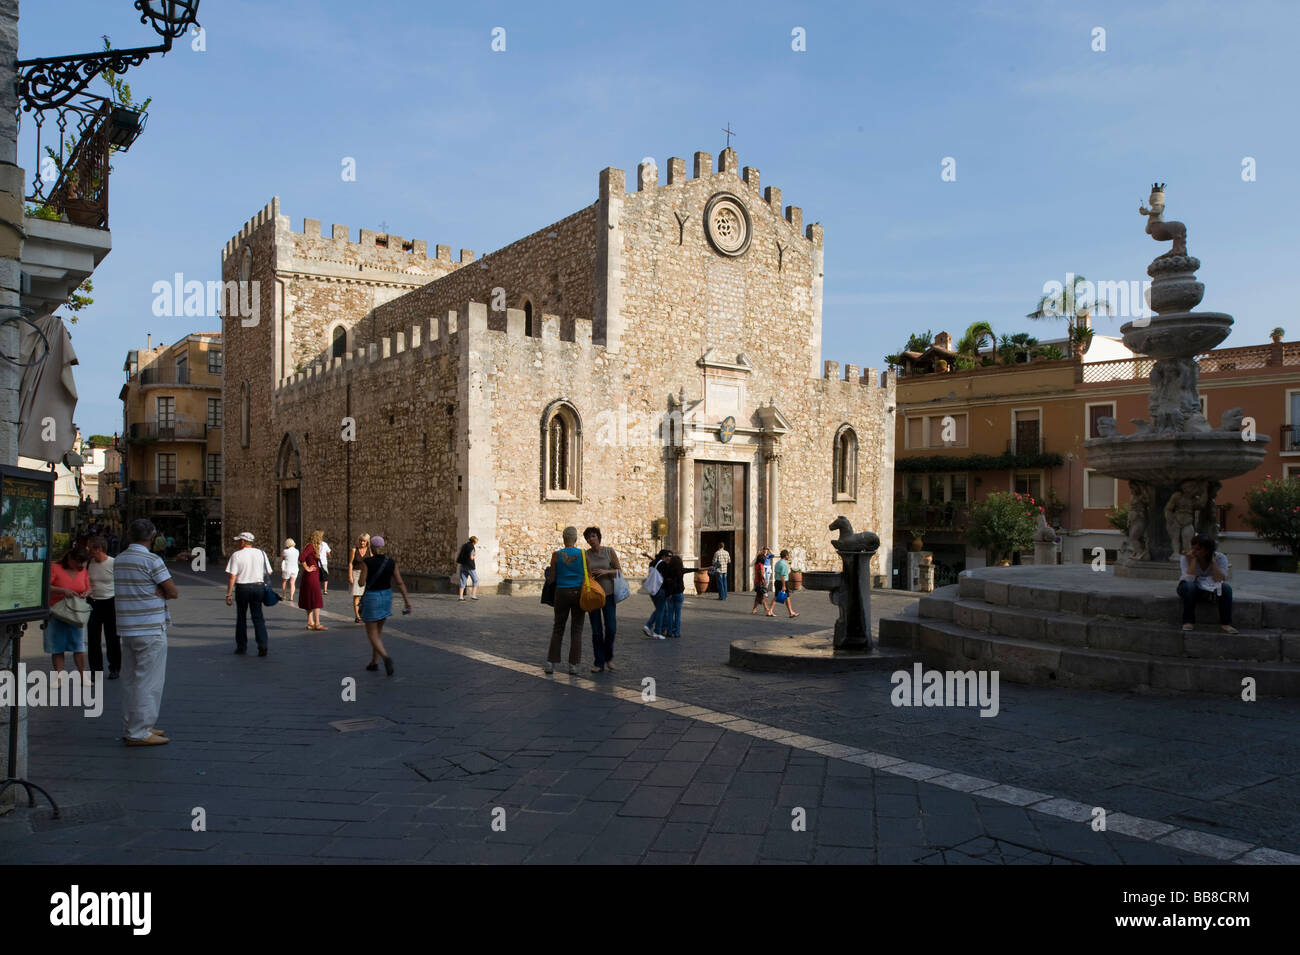 La cattedrale e la fontana della piazza della cattedrale, Taormina, Sicilia, Italia Foto Stock